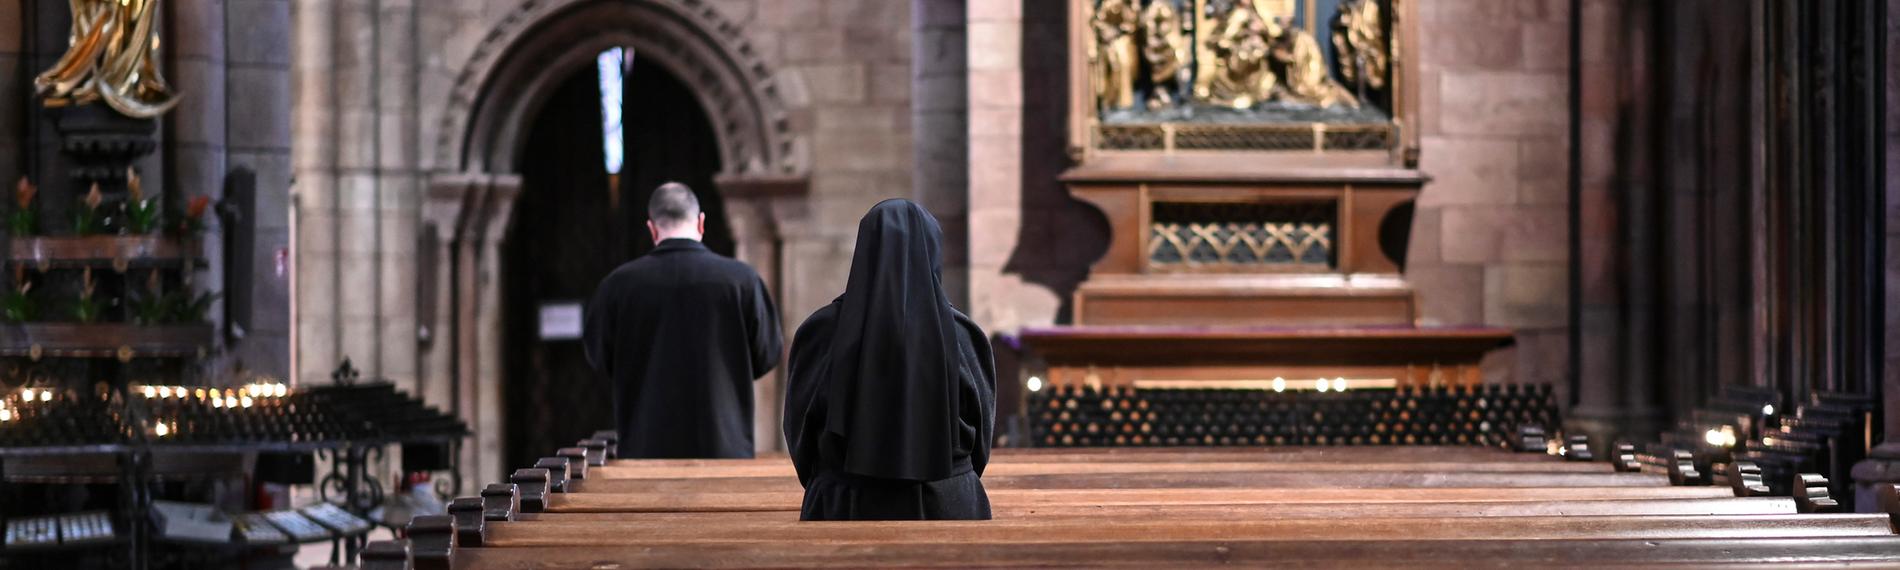 Archiv: Eine Nonne verfolgt den katholischen Gottesdienst im Münster, aufgenommen am 15.03.2020